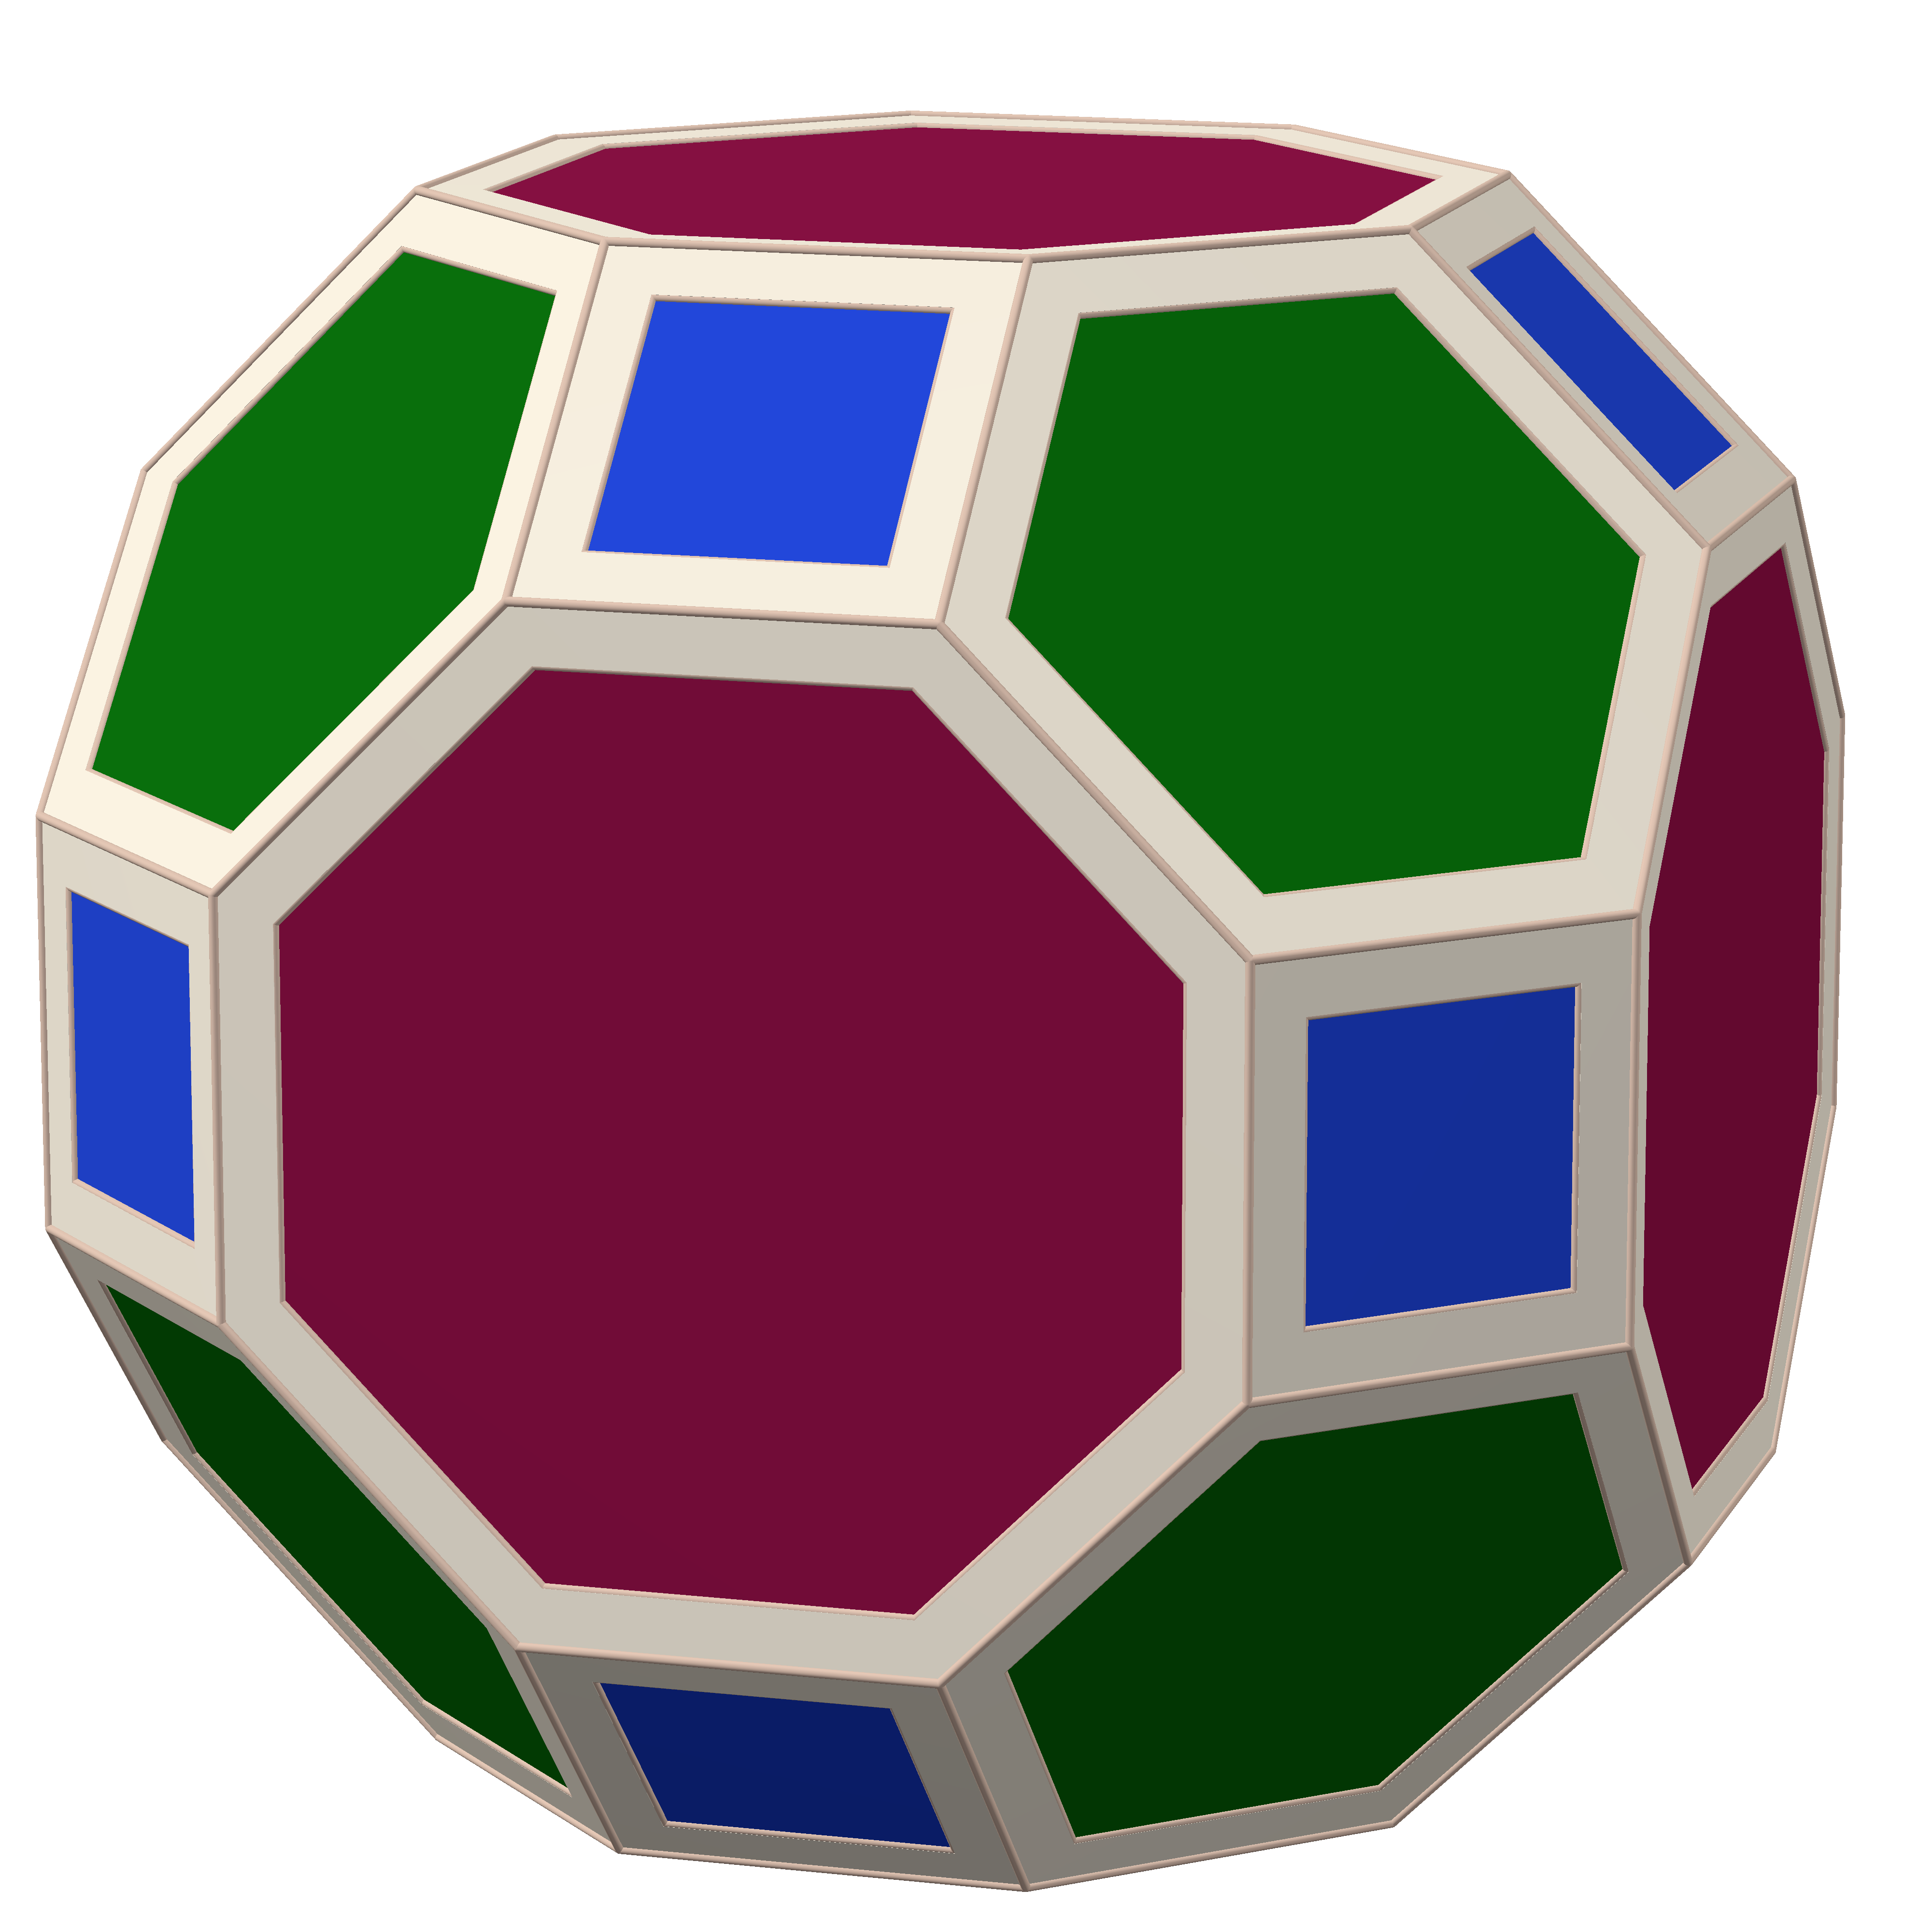 Scacchi tridimensionali - Wikipedia